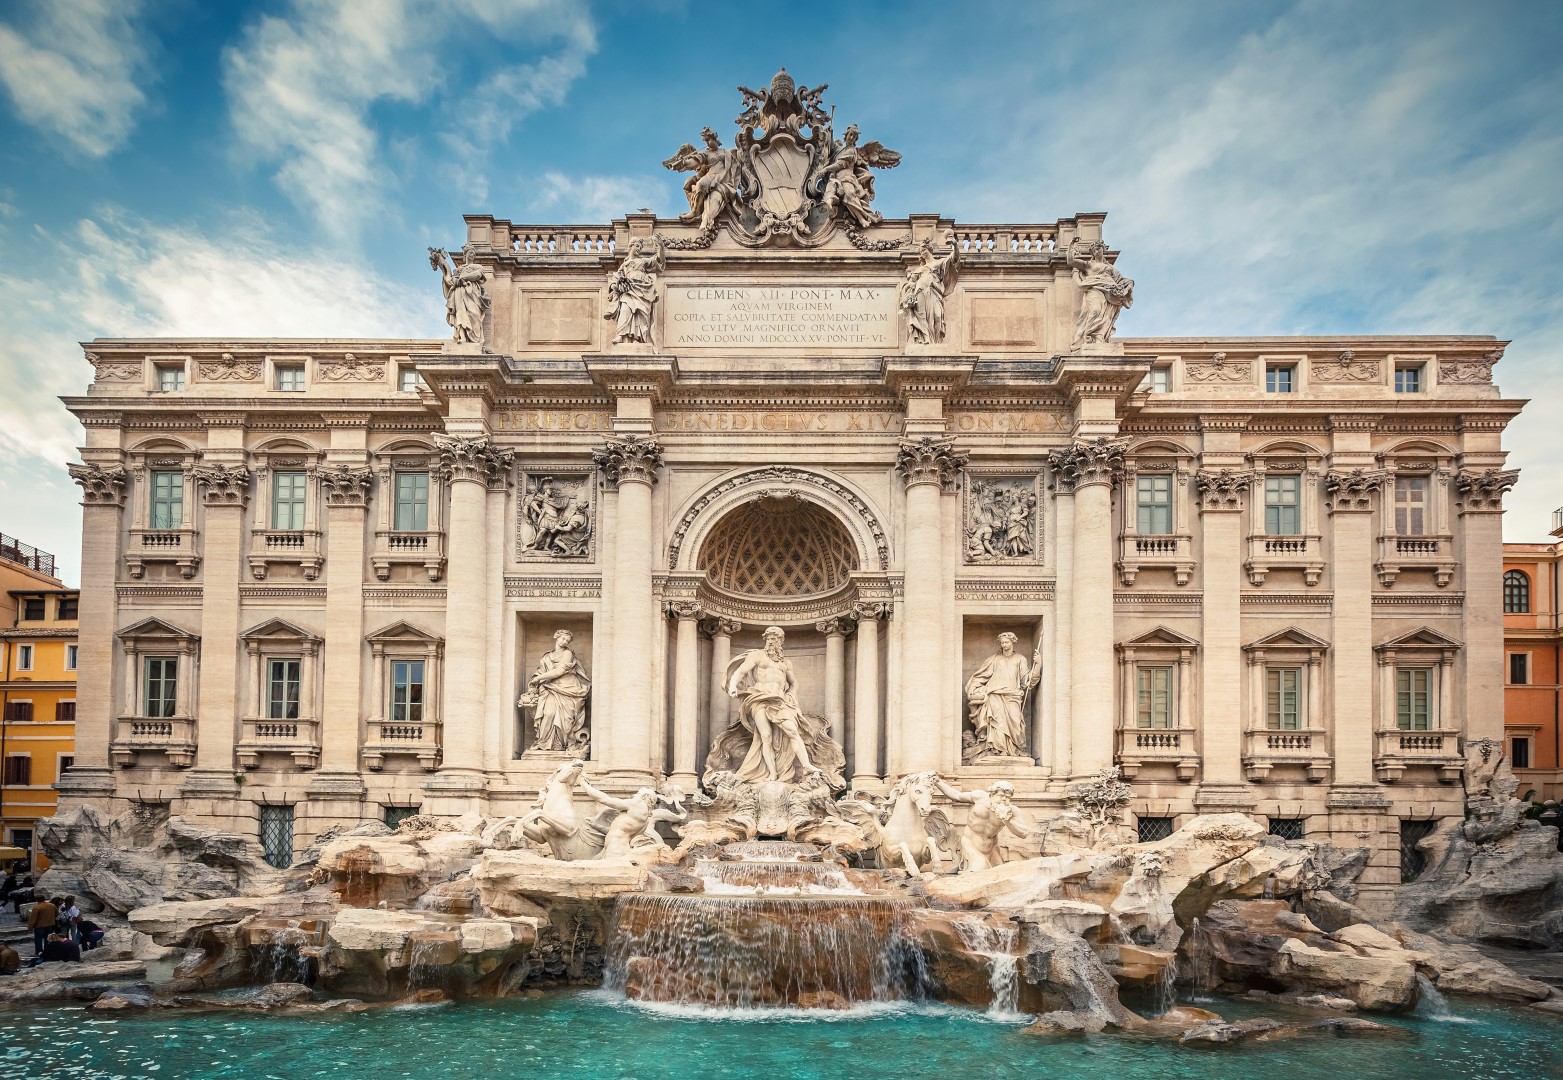 Italy, Rome, Trevi Fountain